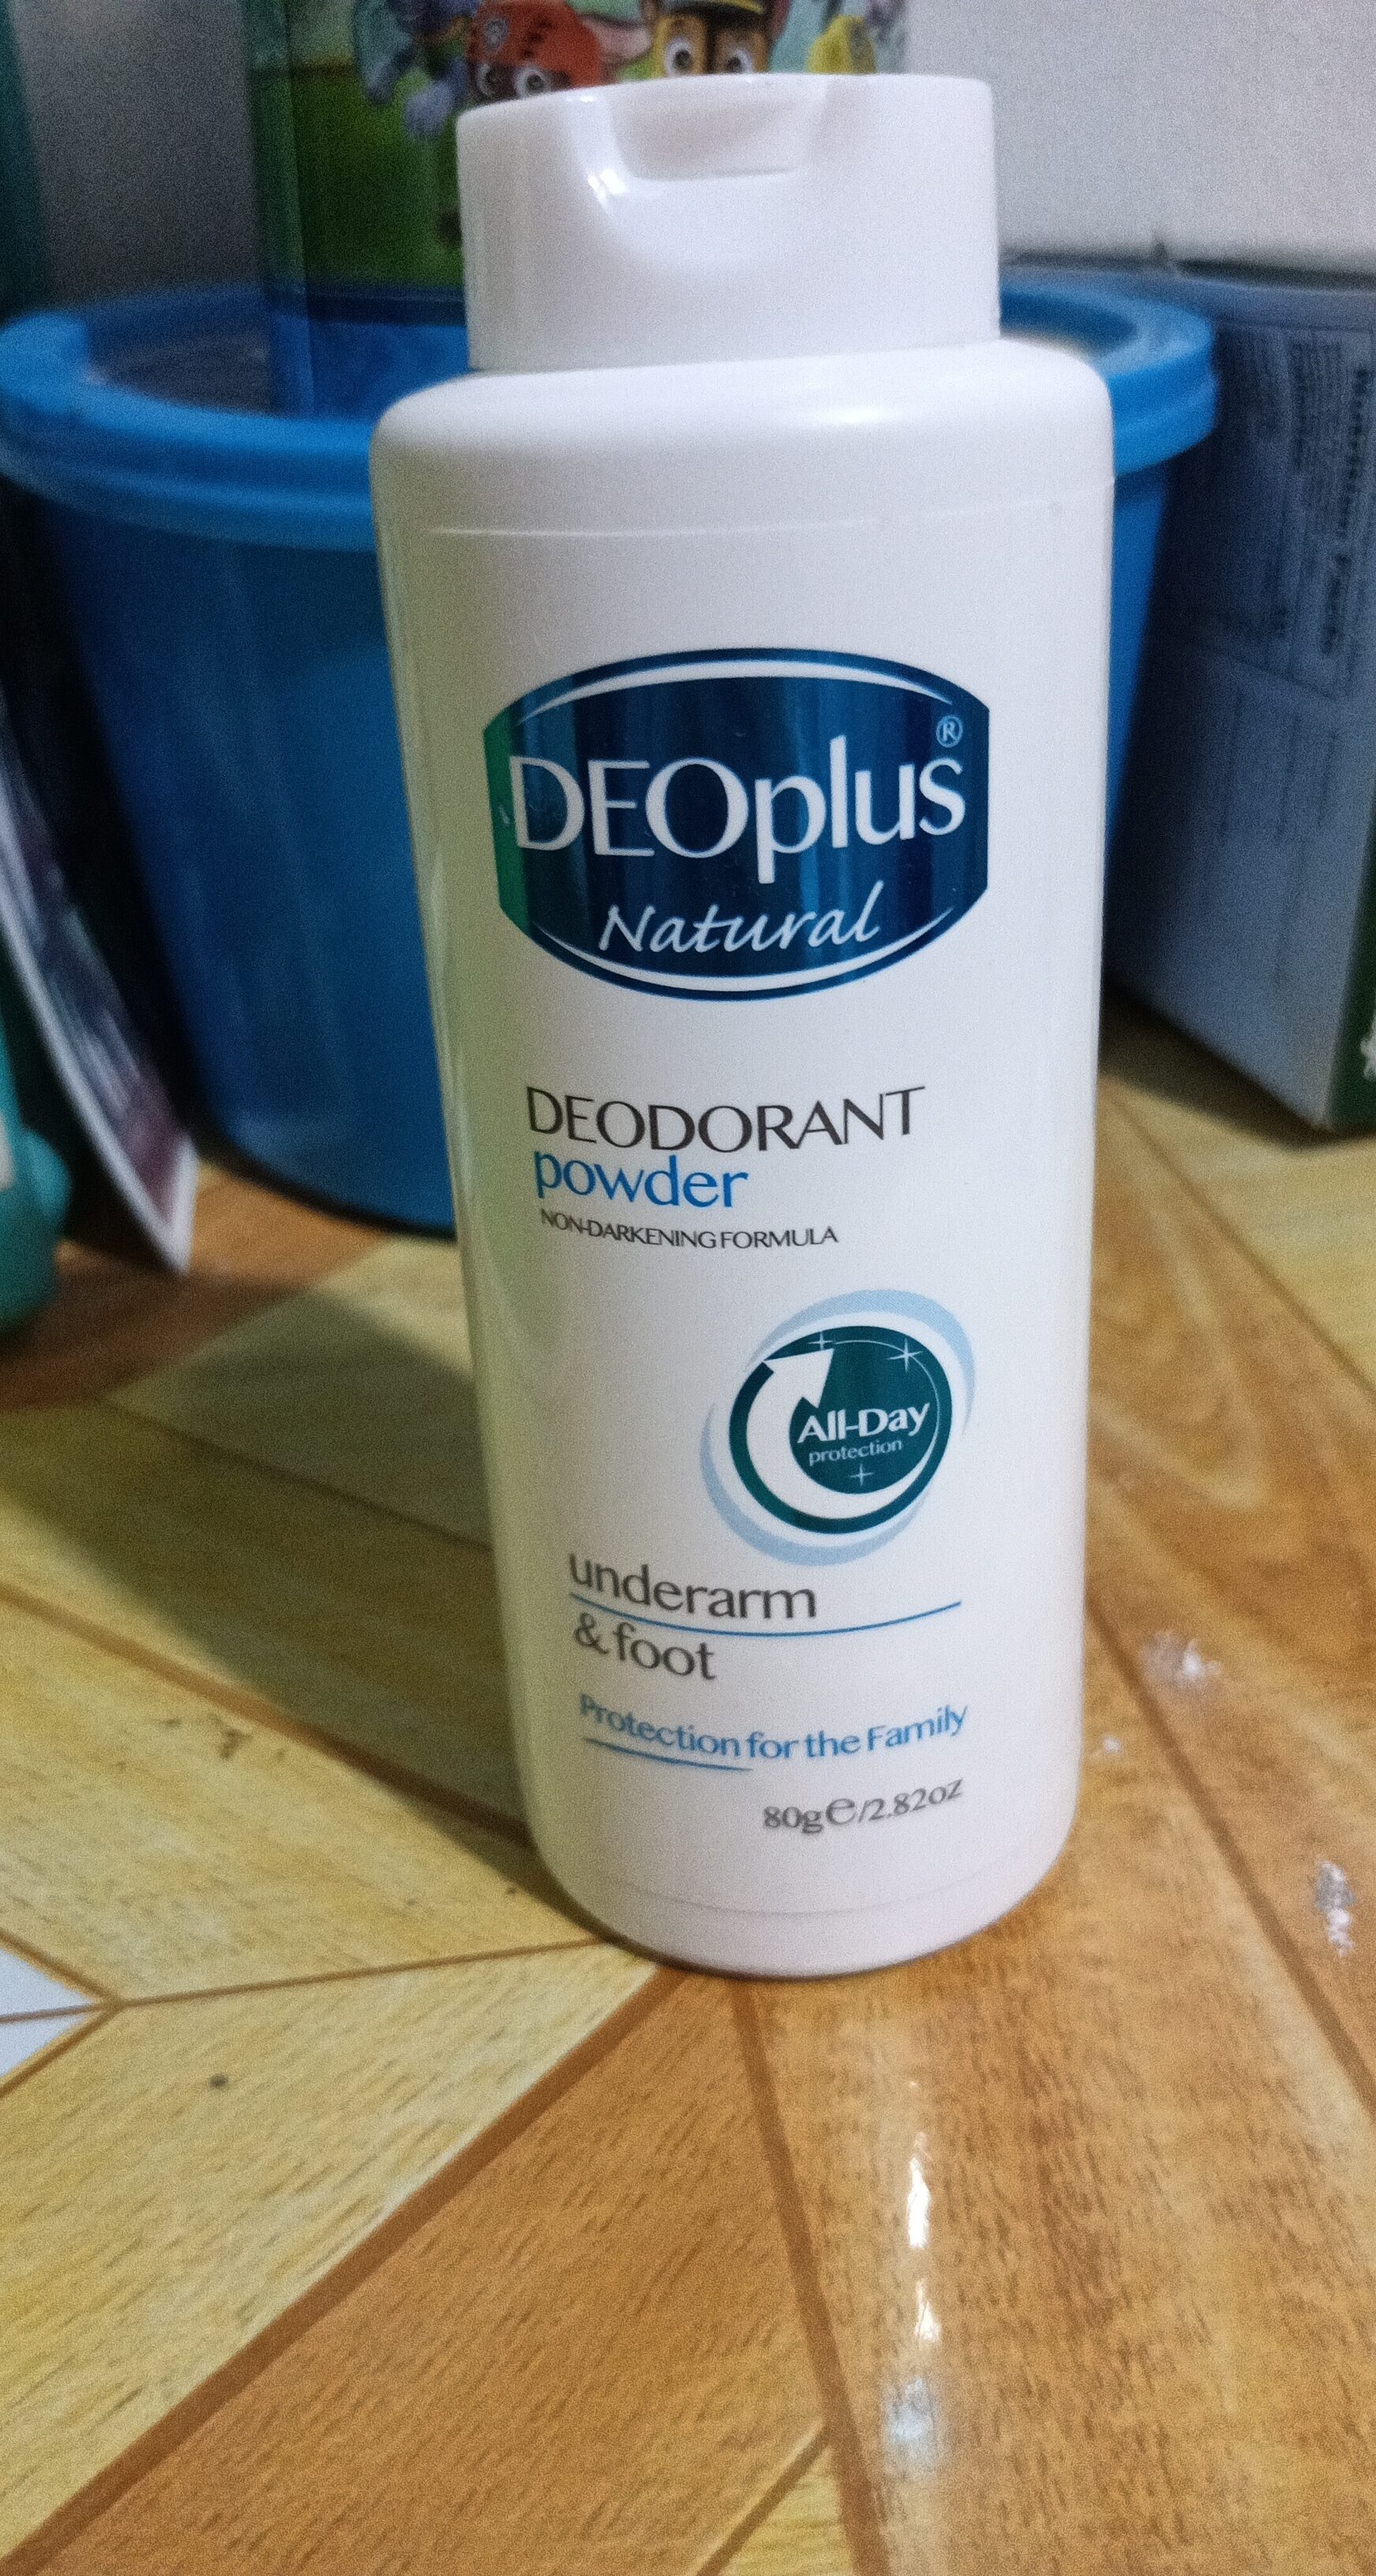 DEOplus deodorant powder - Product - en